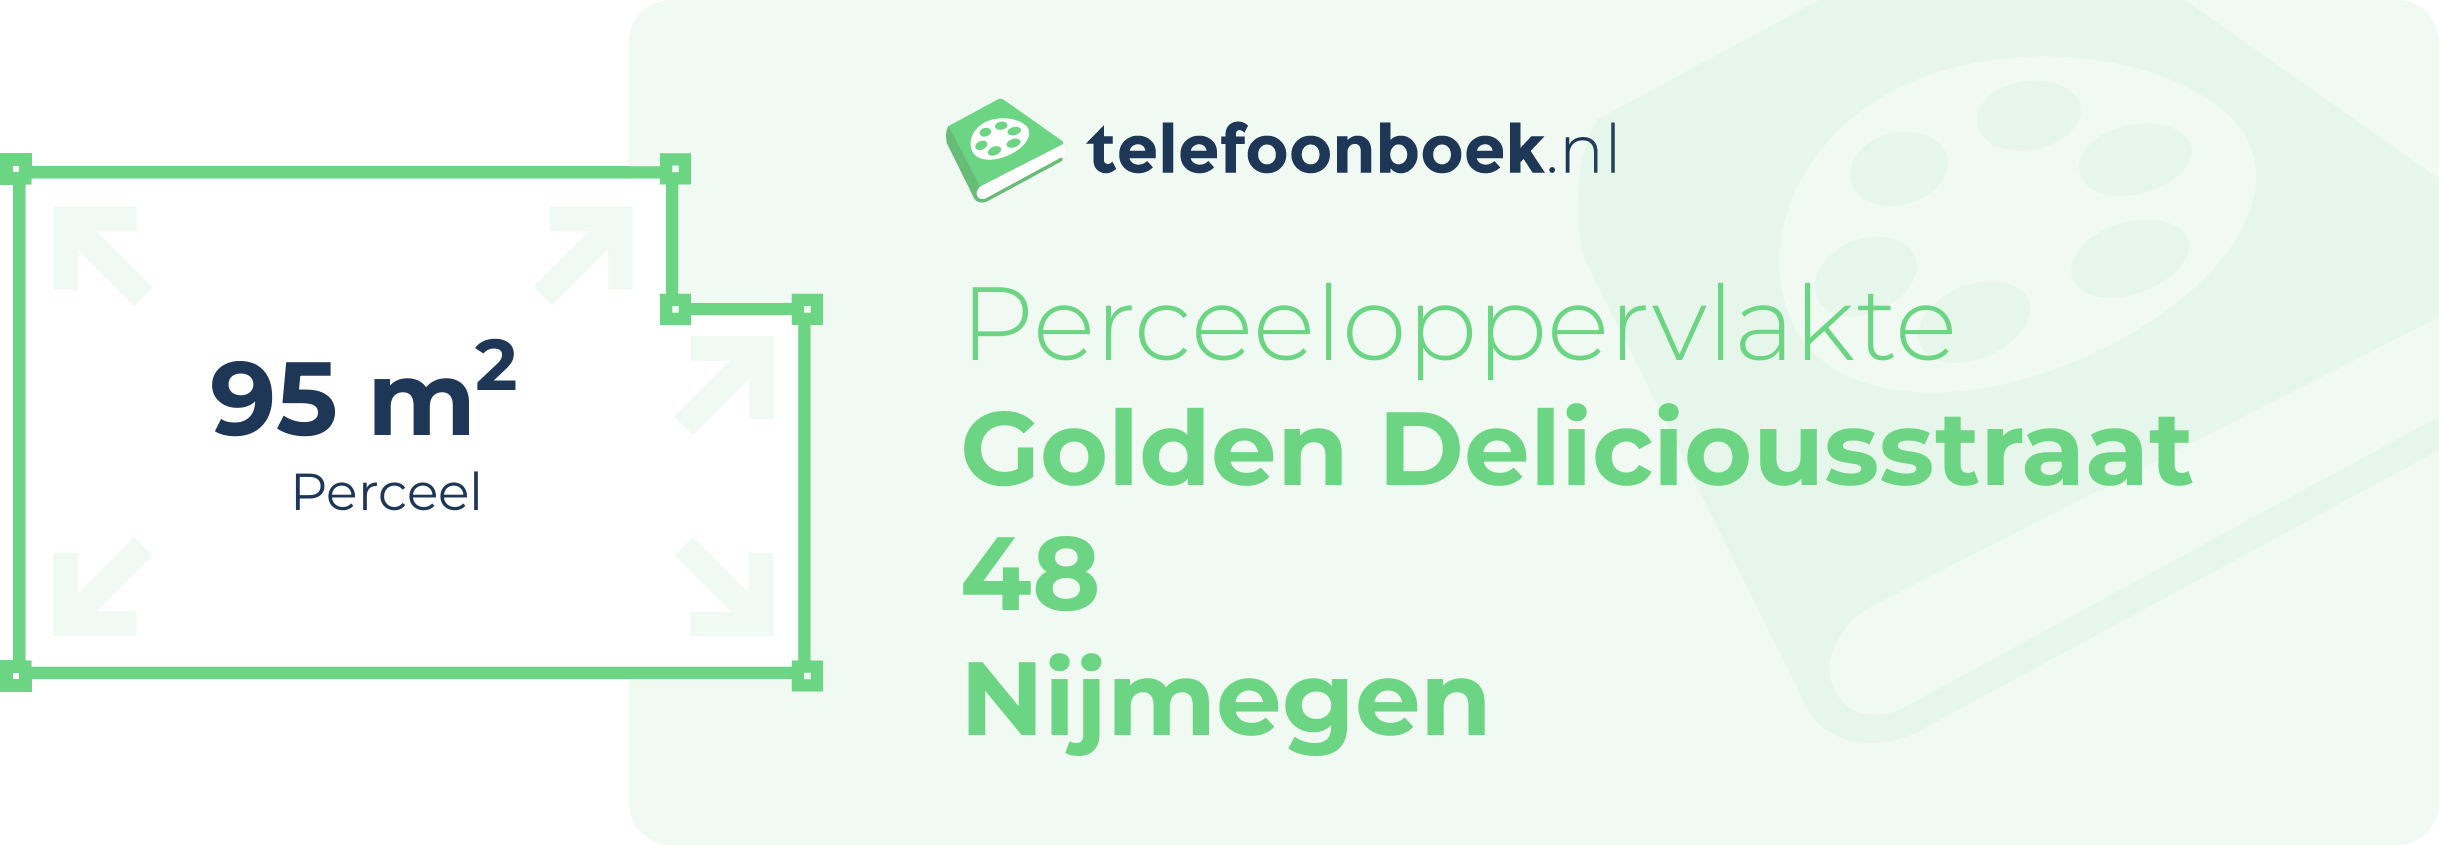 Perceeloppervlakte Golden Deliciousstraat 48 Nijmegen